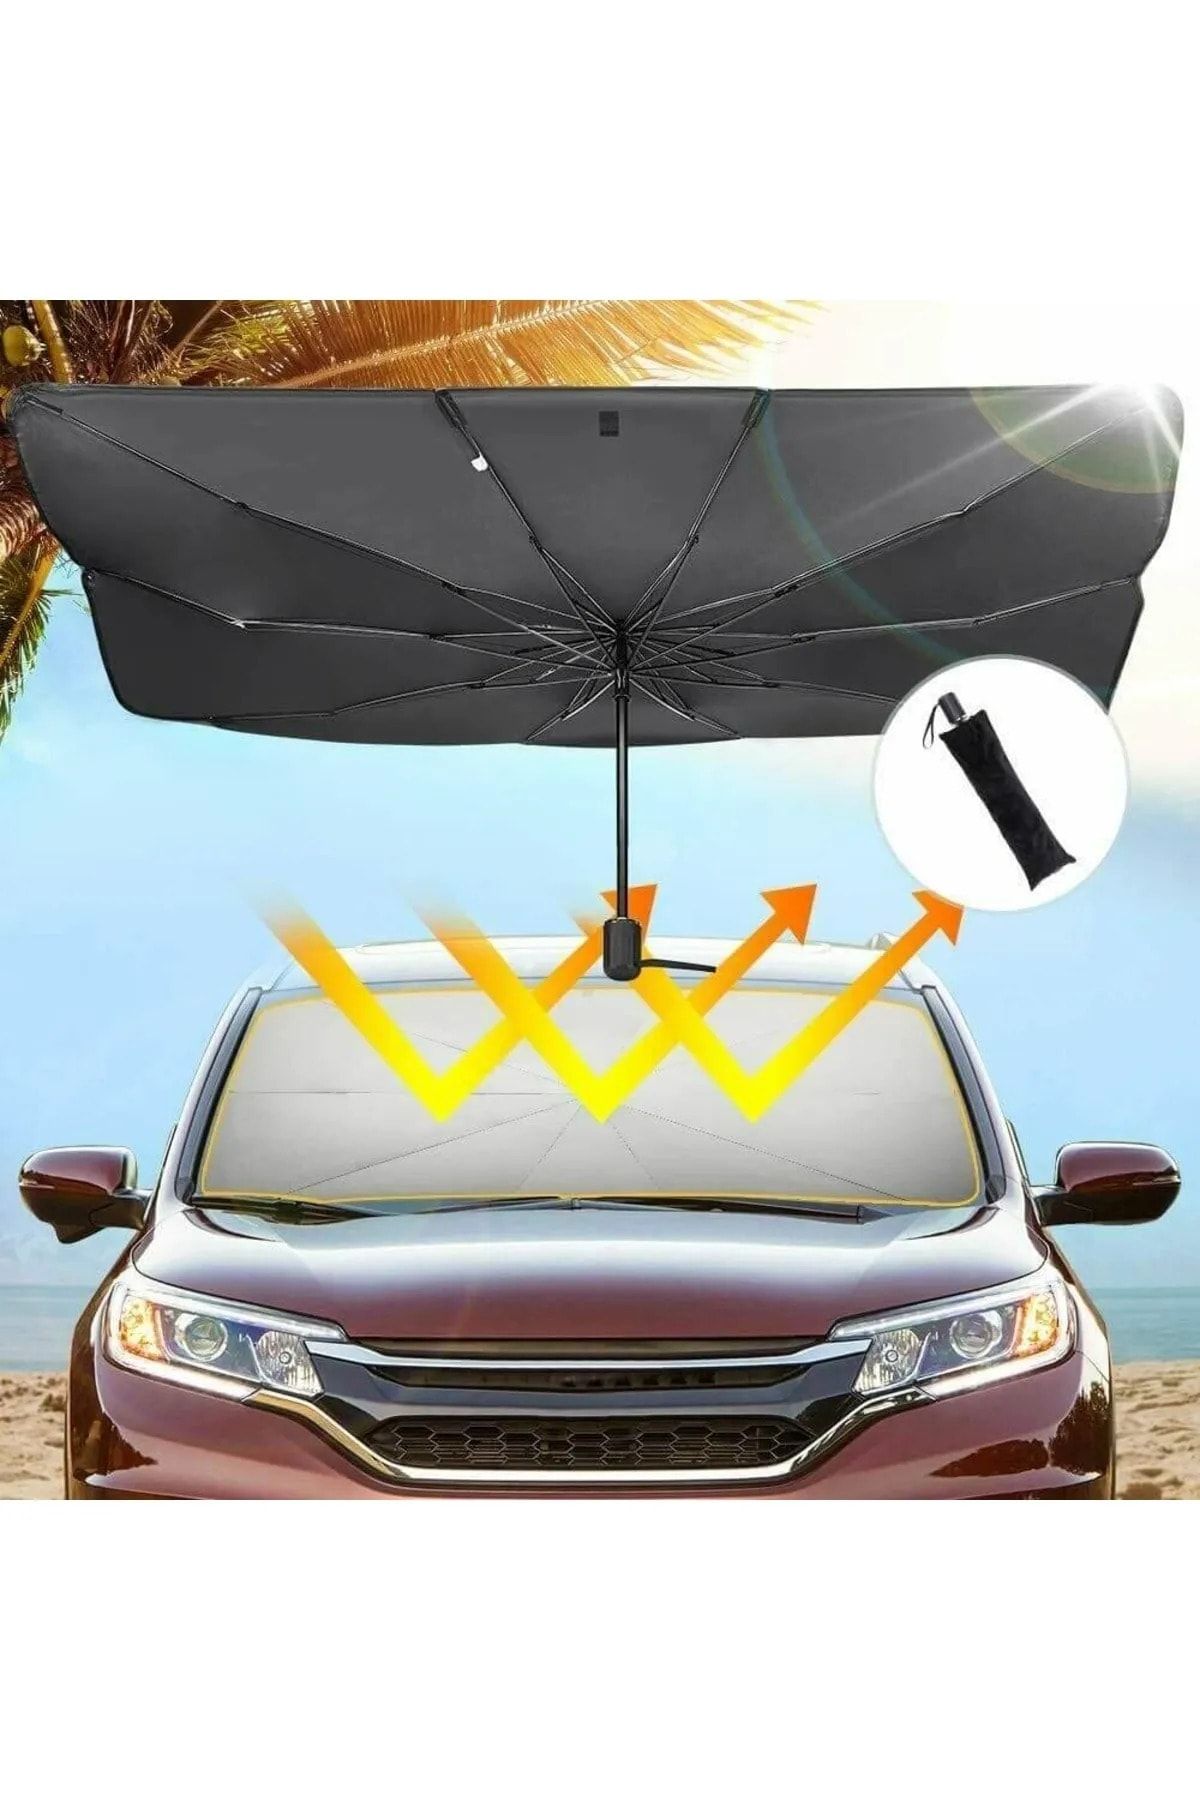 Universal Rover Streetwise Araba Ön Cam Güneşlik Katlanabilir Güneşlik Şemsiye Ön Cam Gölgelik